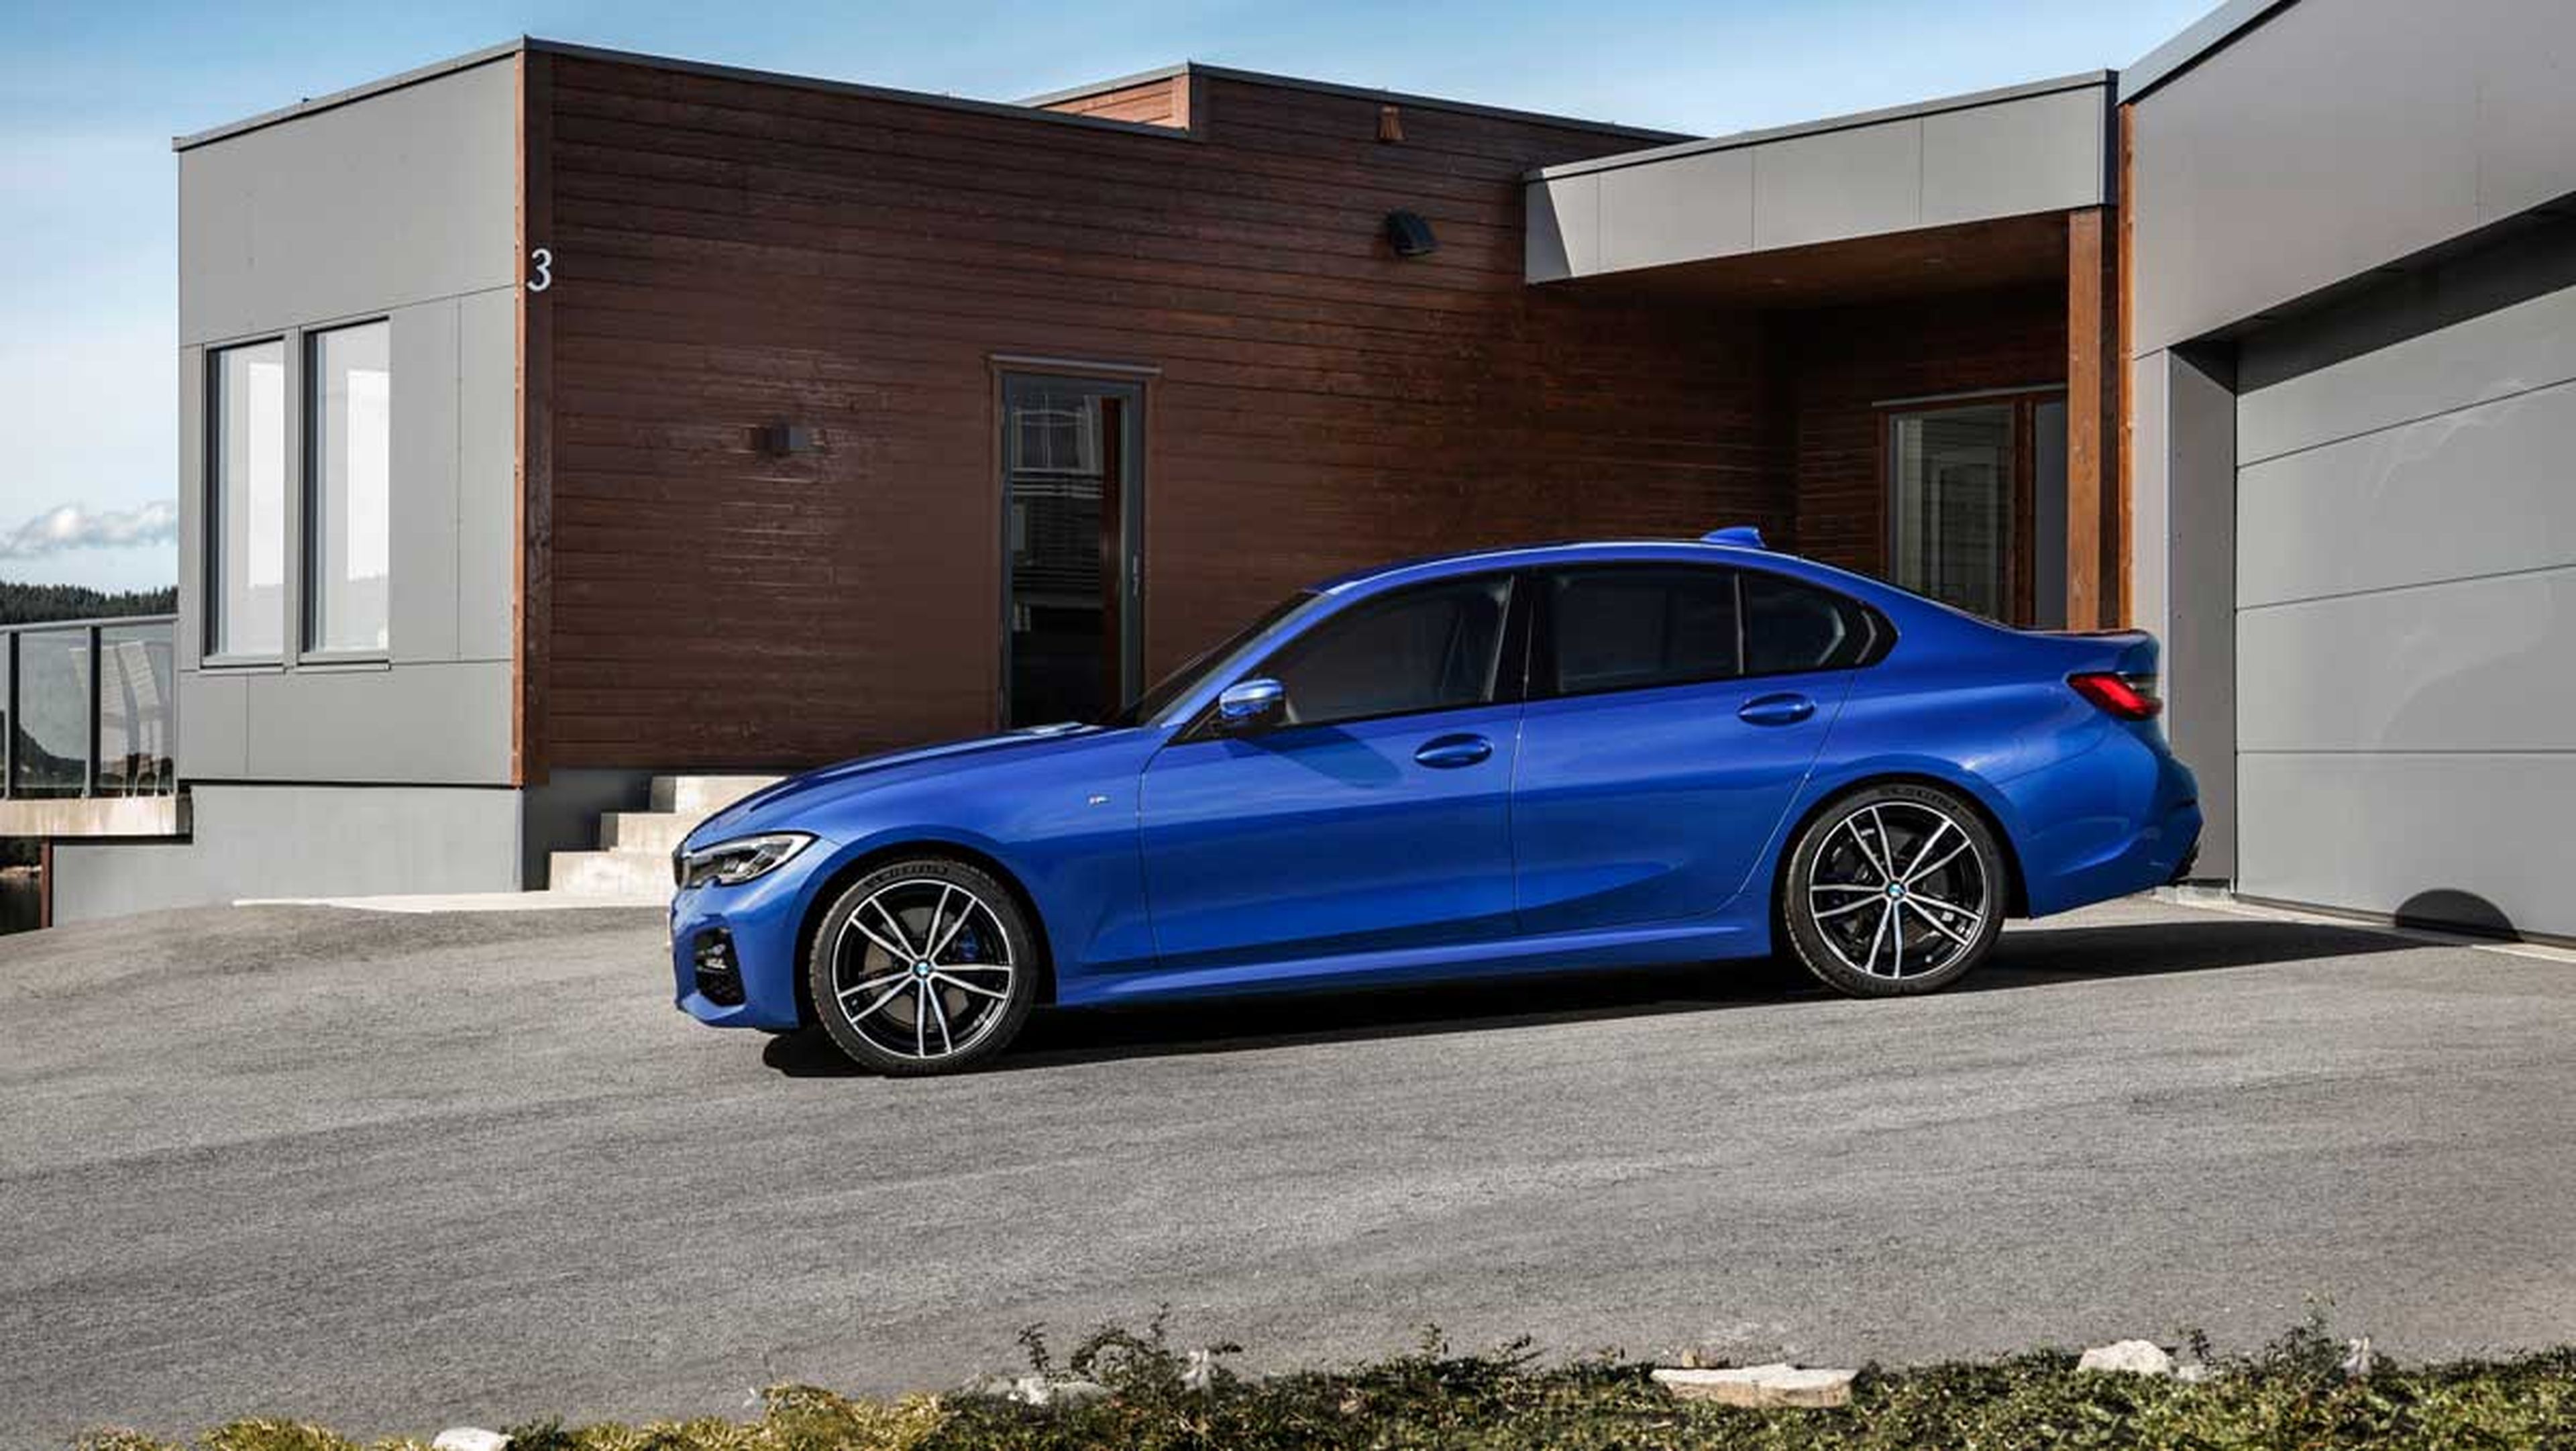 BMW Serie 3 2019